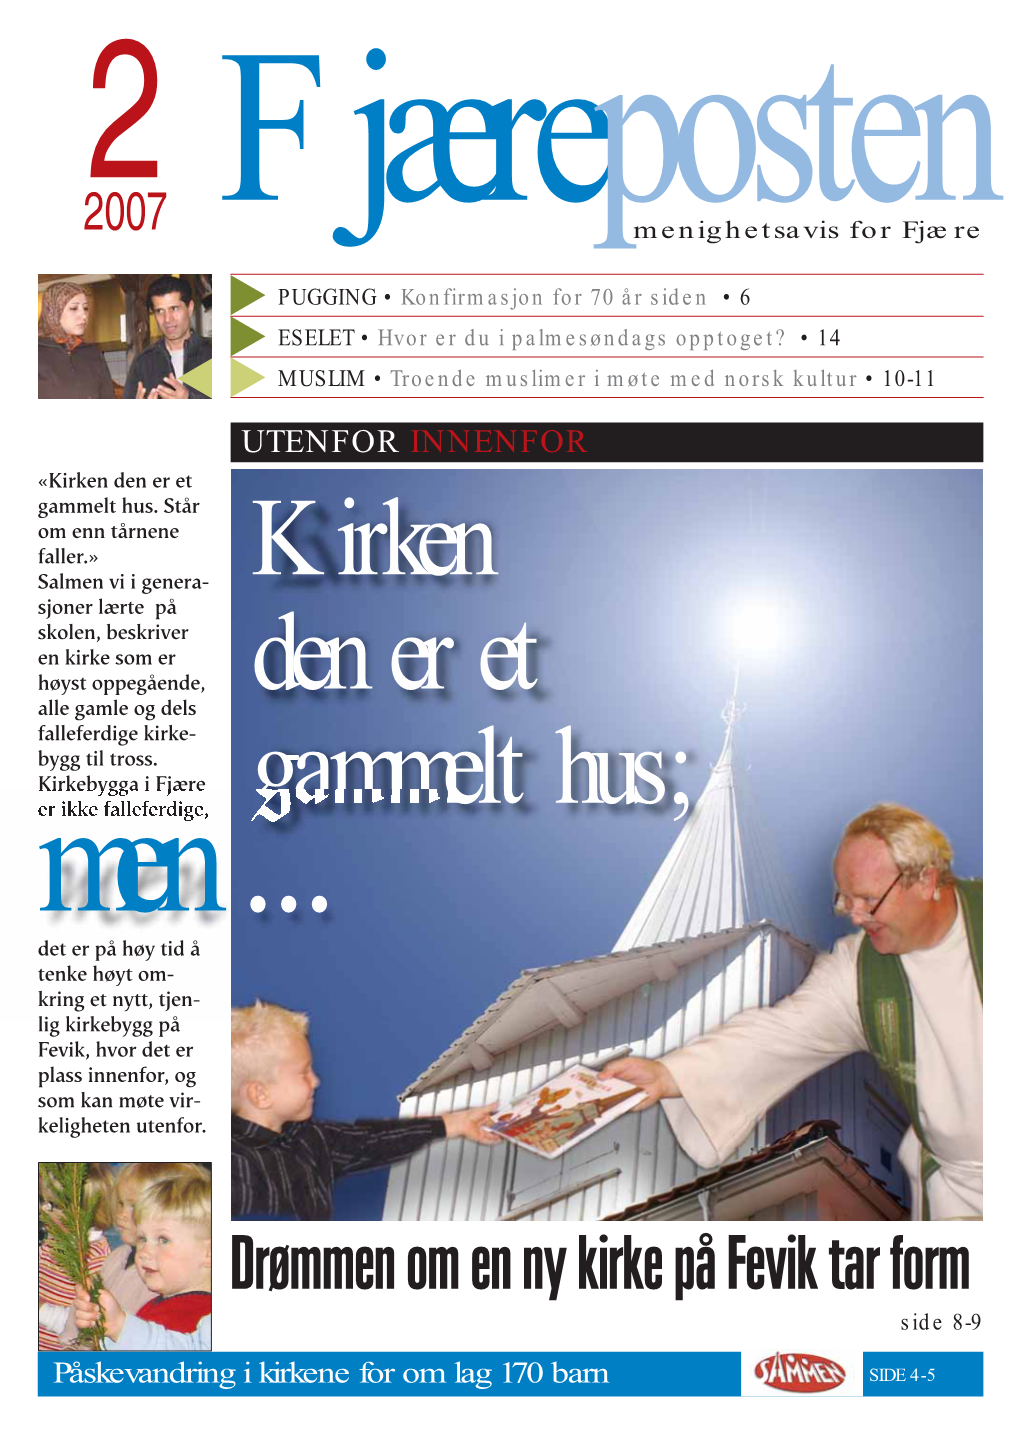 Drømmen Om En Ny Kirke På Fevik Tar Form Malt Av Emil Rødsjø Side 8-9